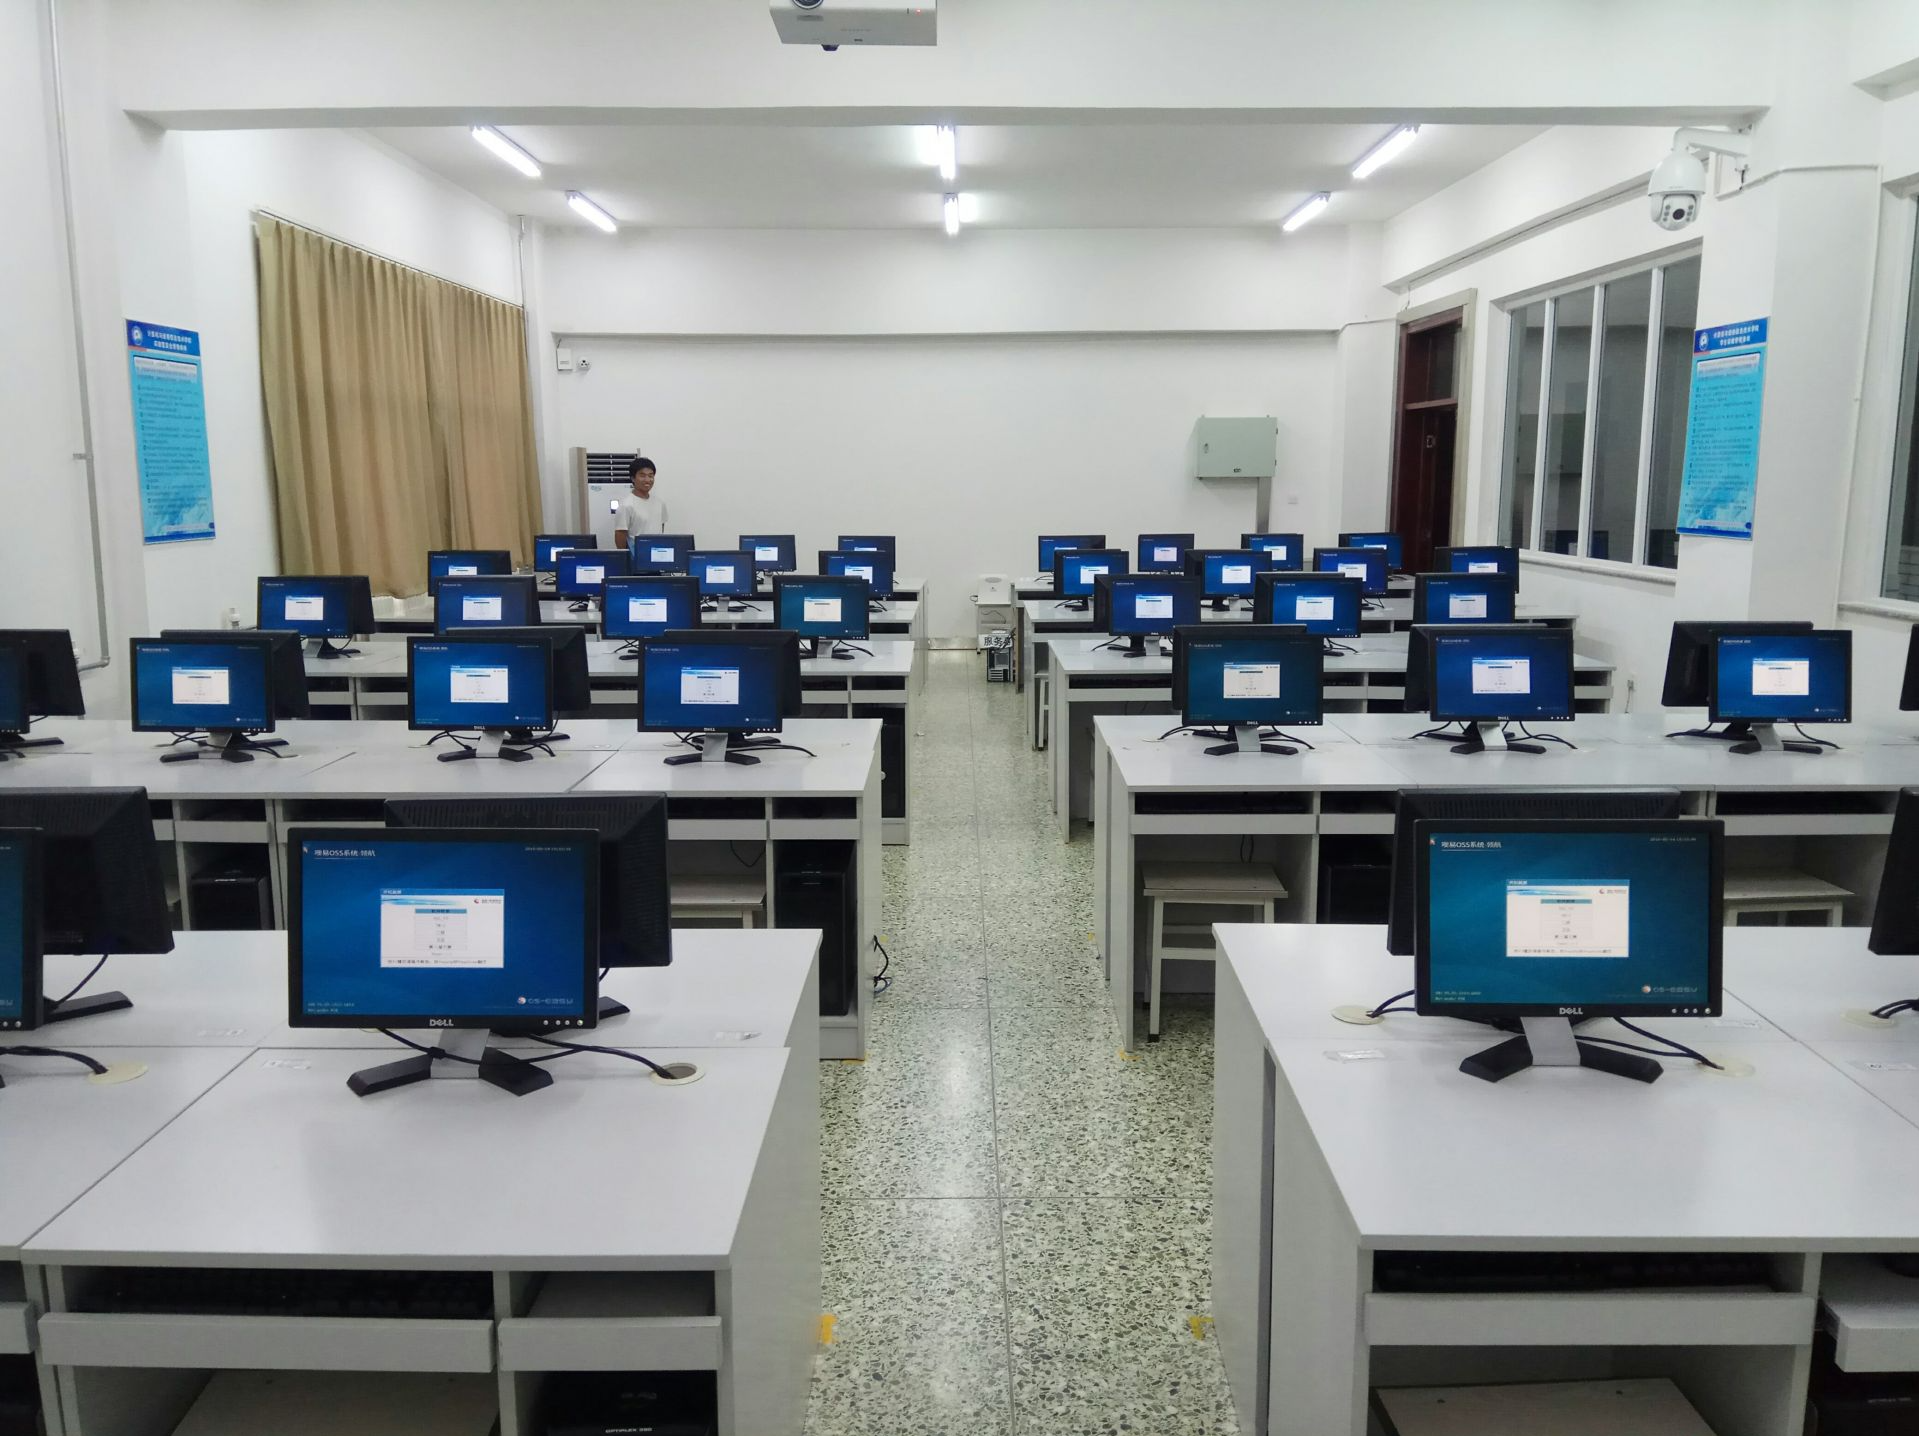 广东省2022年上半年全国计算机等级考试延期举行